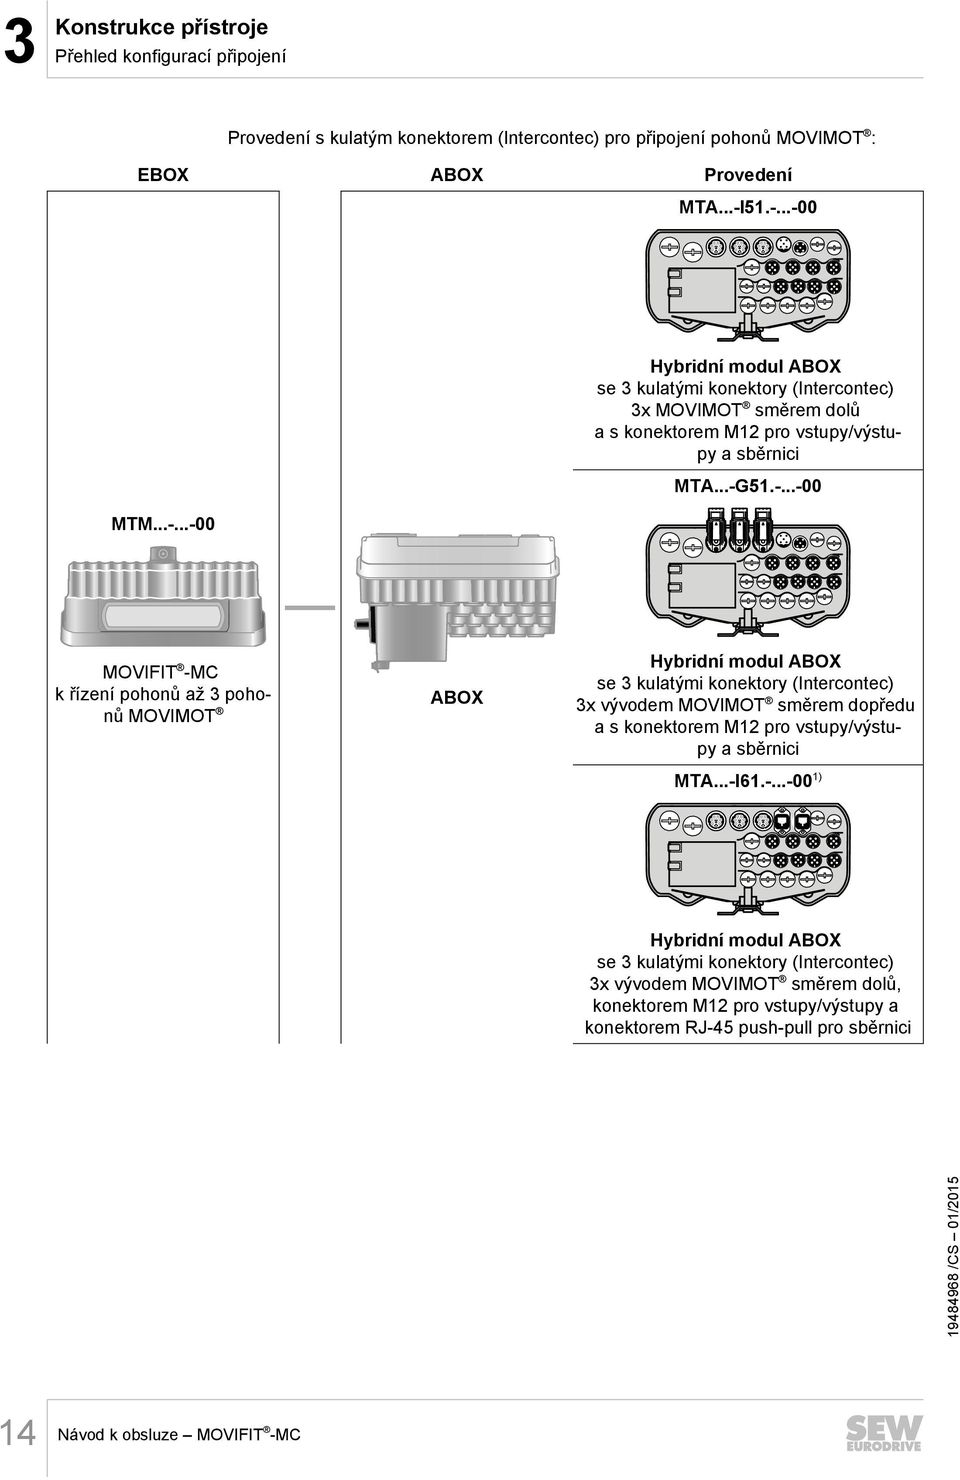 k řízení pohonů až 3 pohonů MOVIMOT ABOX Hybridní modul ABOX se 3 kulatými konektory (Intercontec) 3x vývodem MOVIMOT směrem dopředu a s konektorem M12 pro vstupy/výstupy a sběrnici MTA.